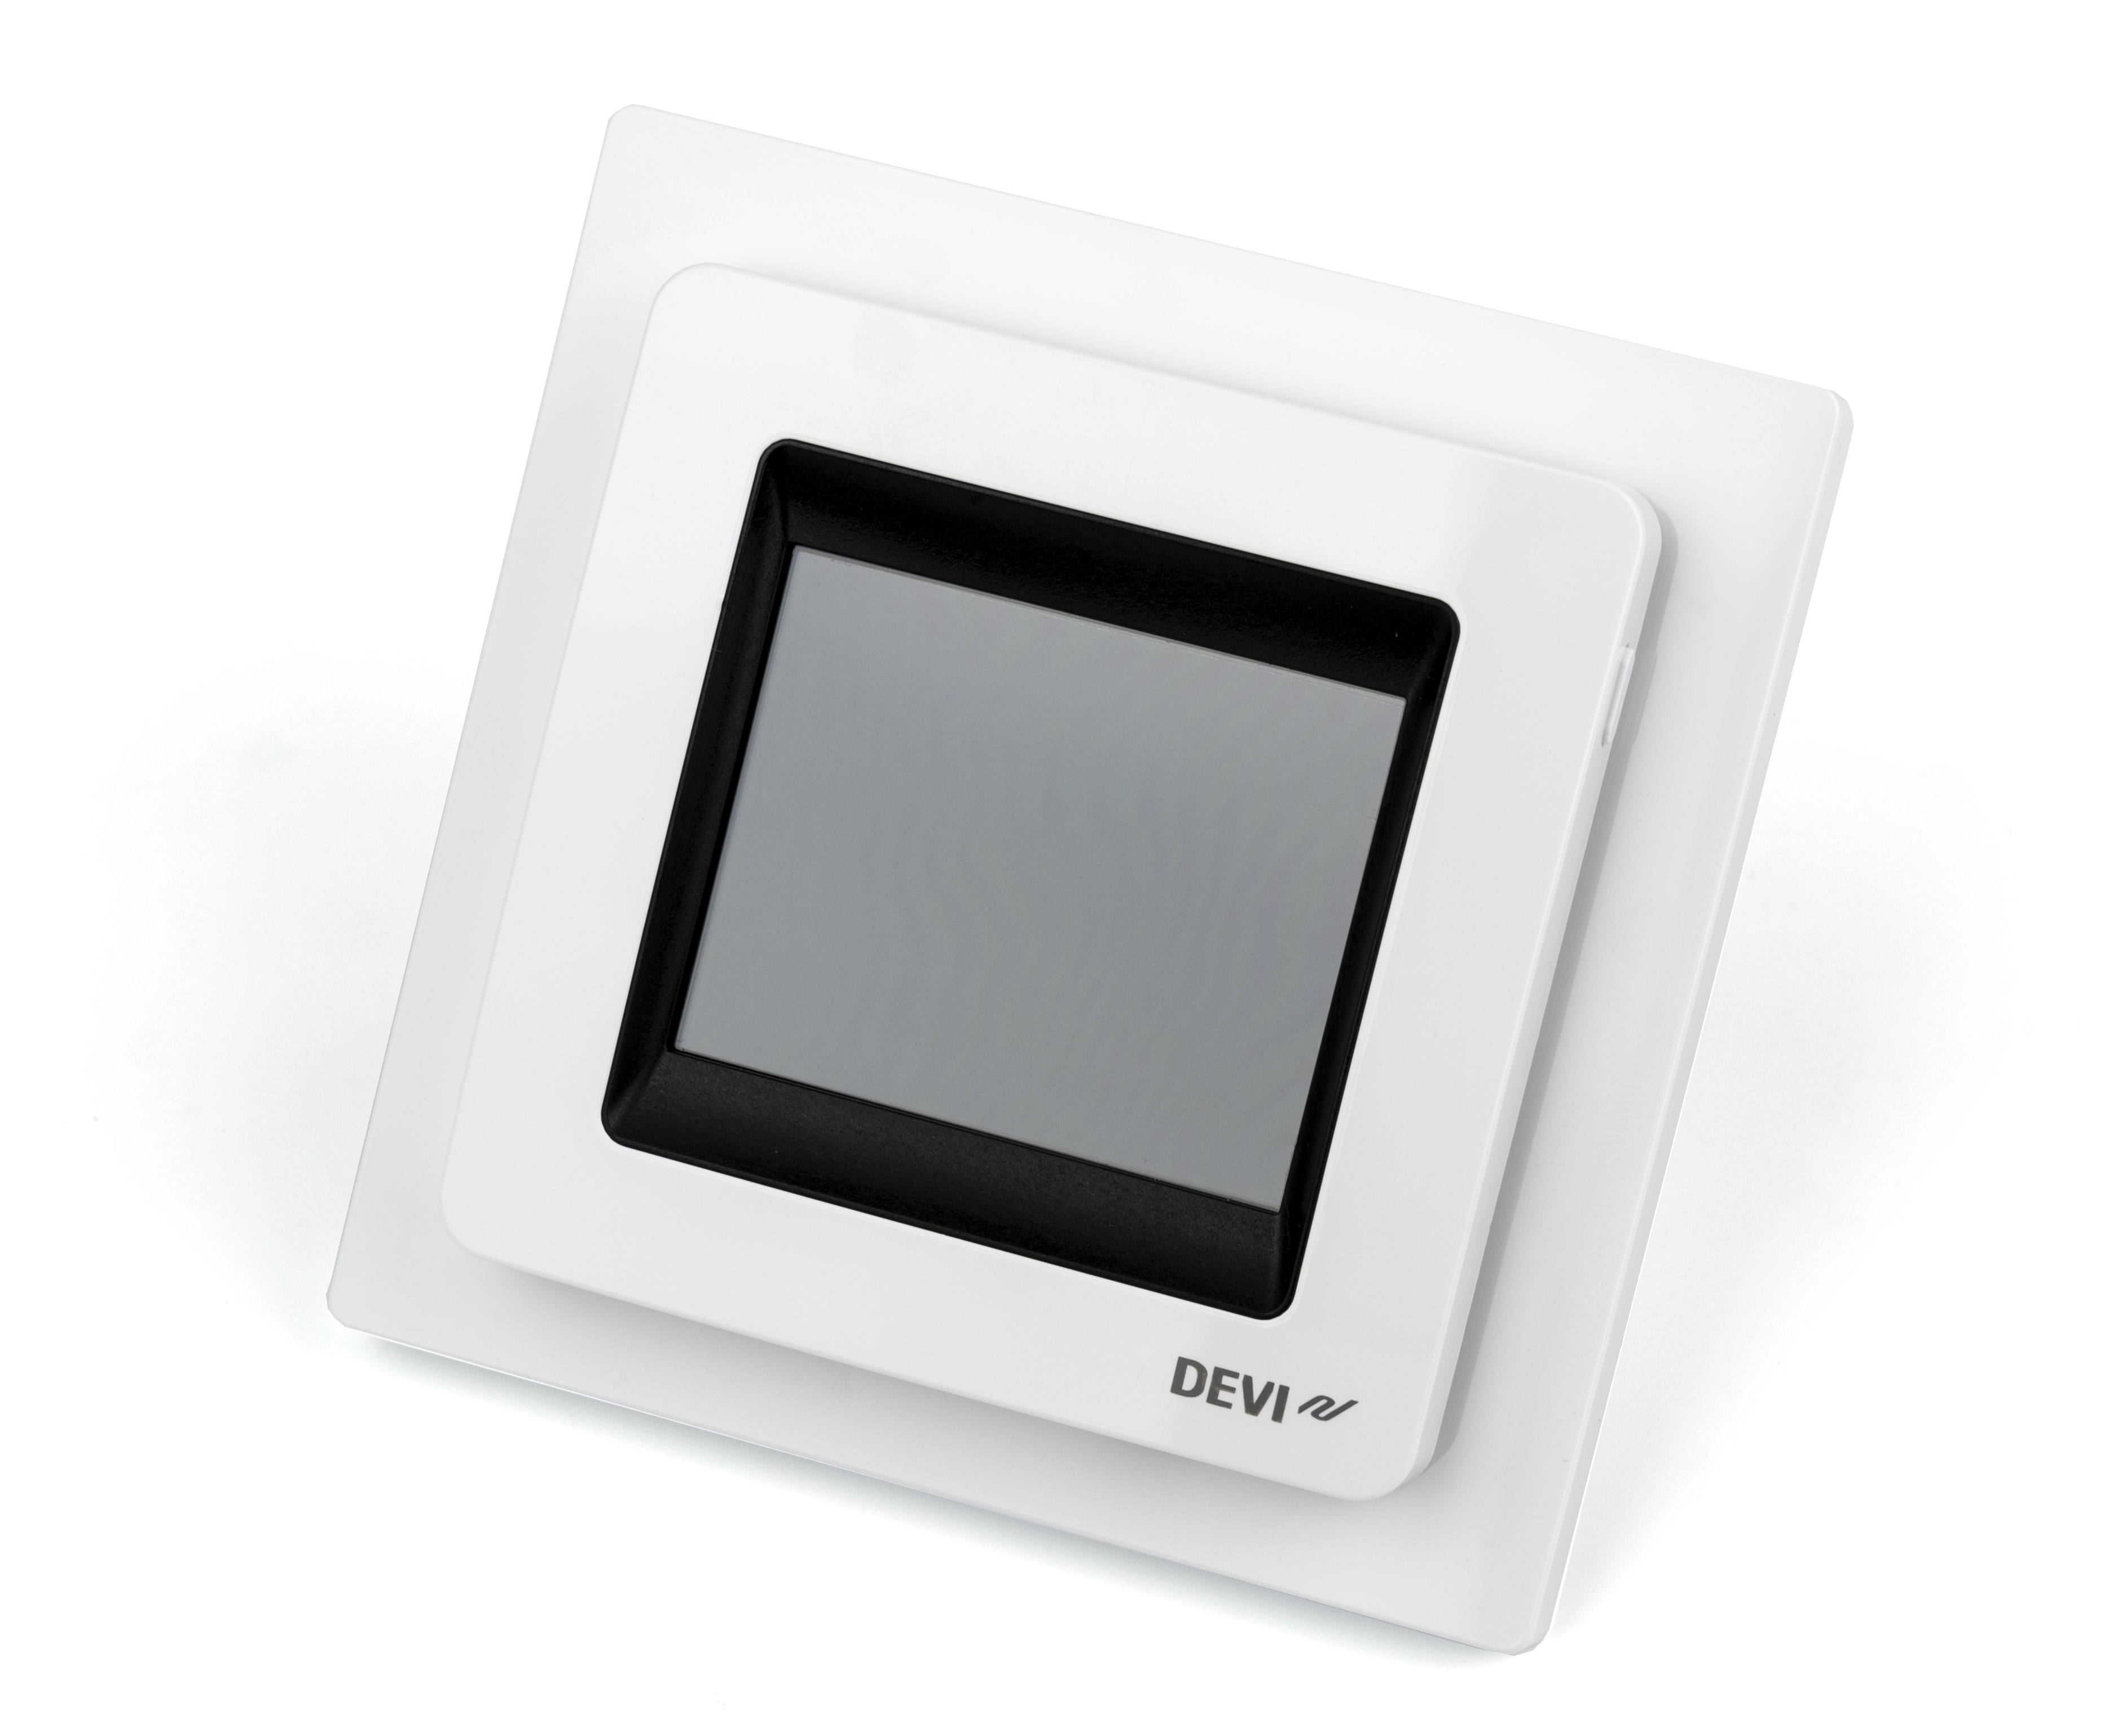 Programovatelný termostat Danfoss DEVIreg Touch 230 V, Polární bílá RAL 9016